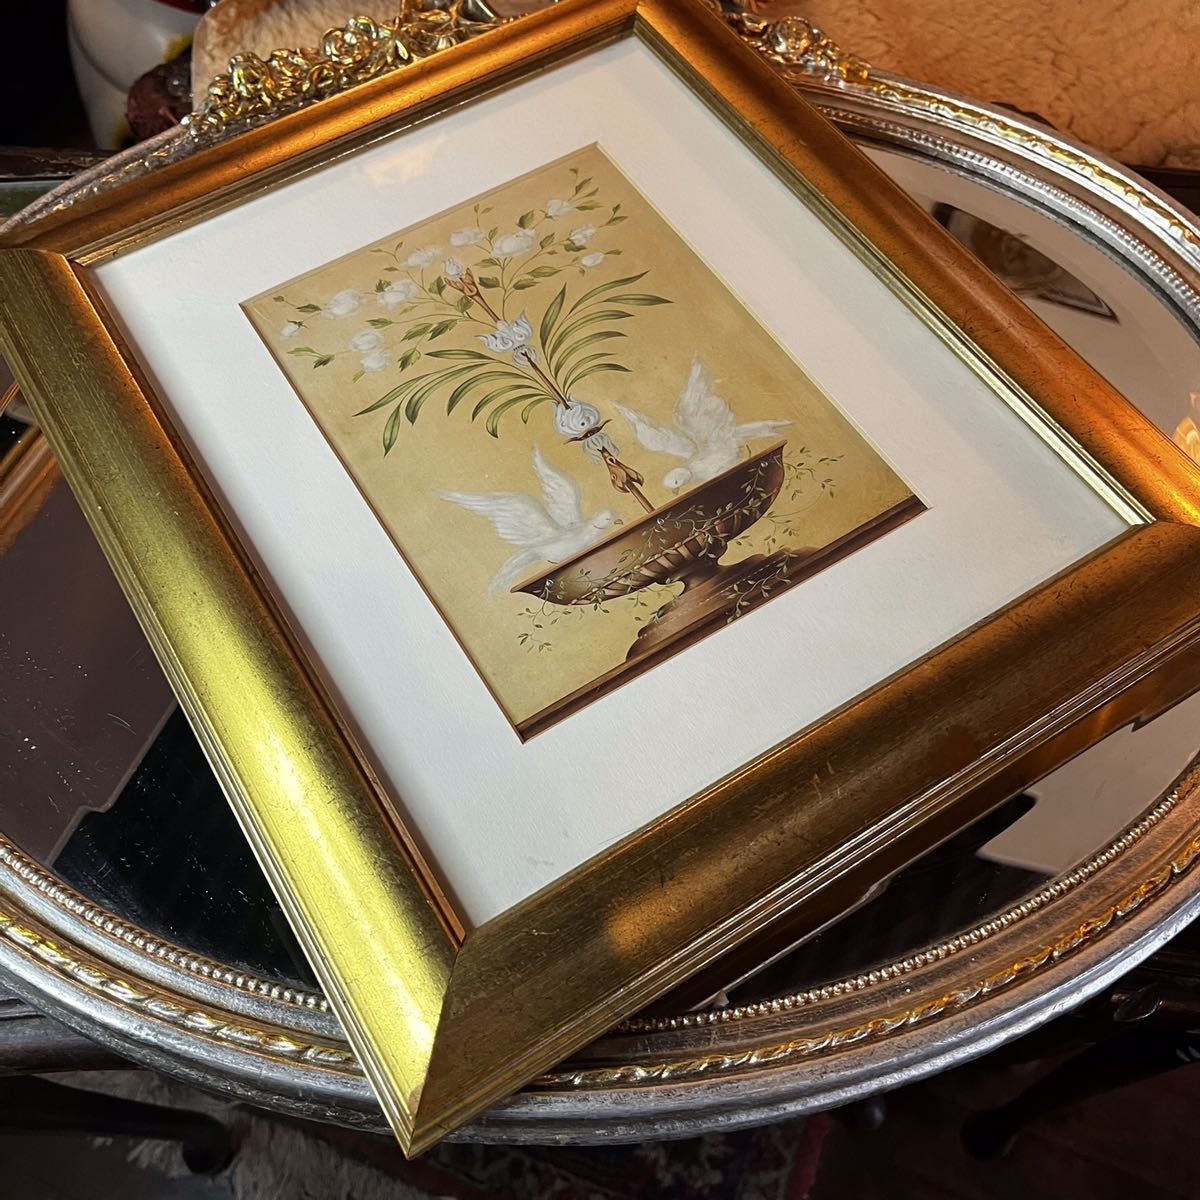 Yufuin Peinture antique fabriquée en Italie avec cadre en bois doré, petit oiseau jouant dans l'eau, taille H 36 W31 D, cuisine, vaisselle, stockage, articles divers de cuisine, peut